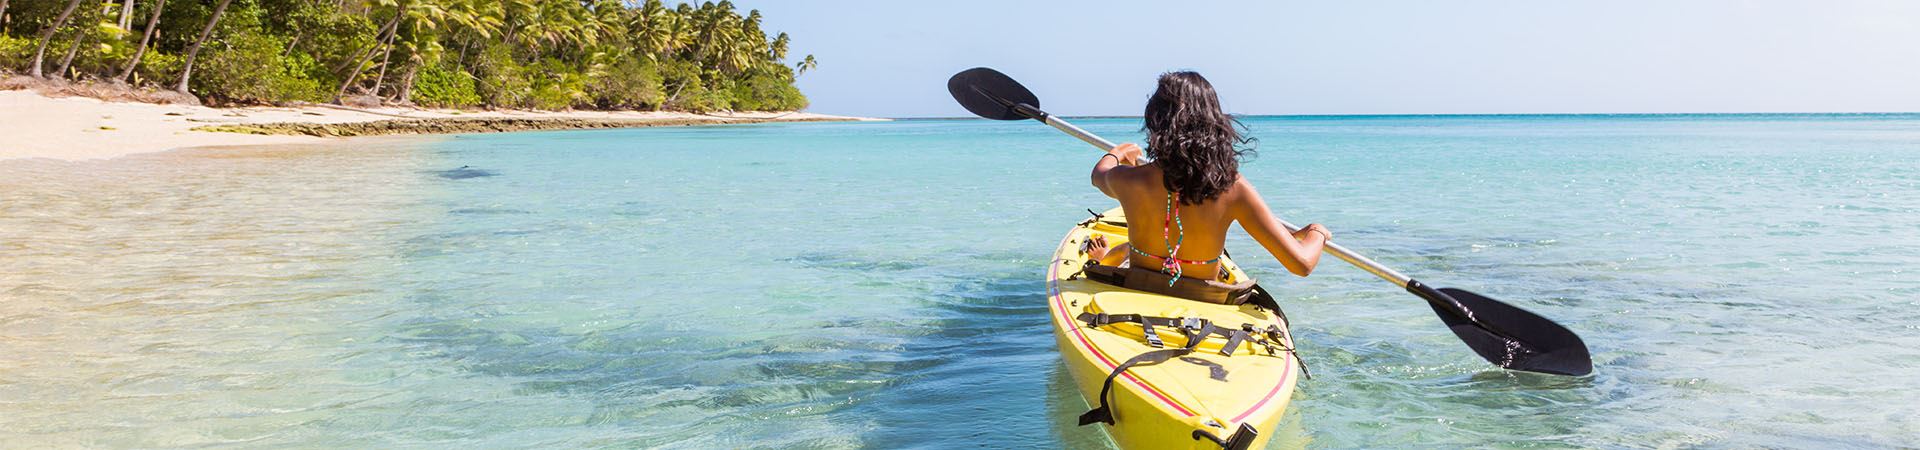 Esta imagen muestra a una chica de espaldas montada en una canoa en el mar. La canoa es amarilla y al fondo se ve arena y algo de vegetación, lo que indica que está cerca de la playa.